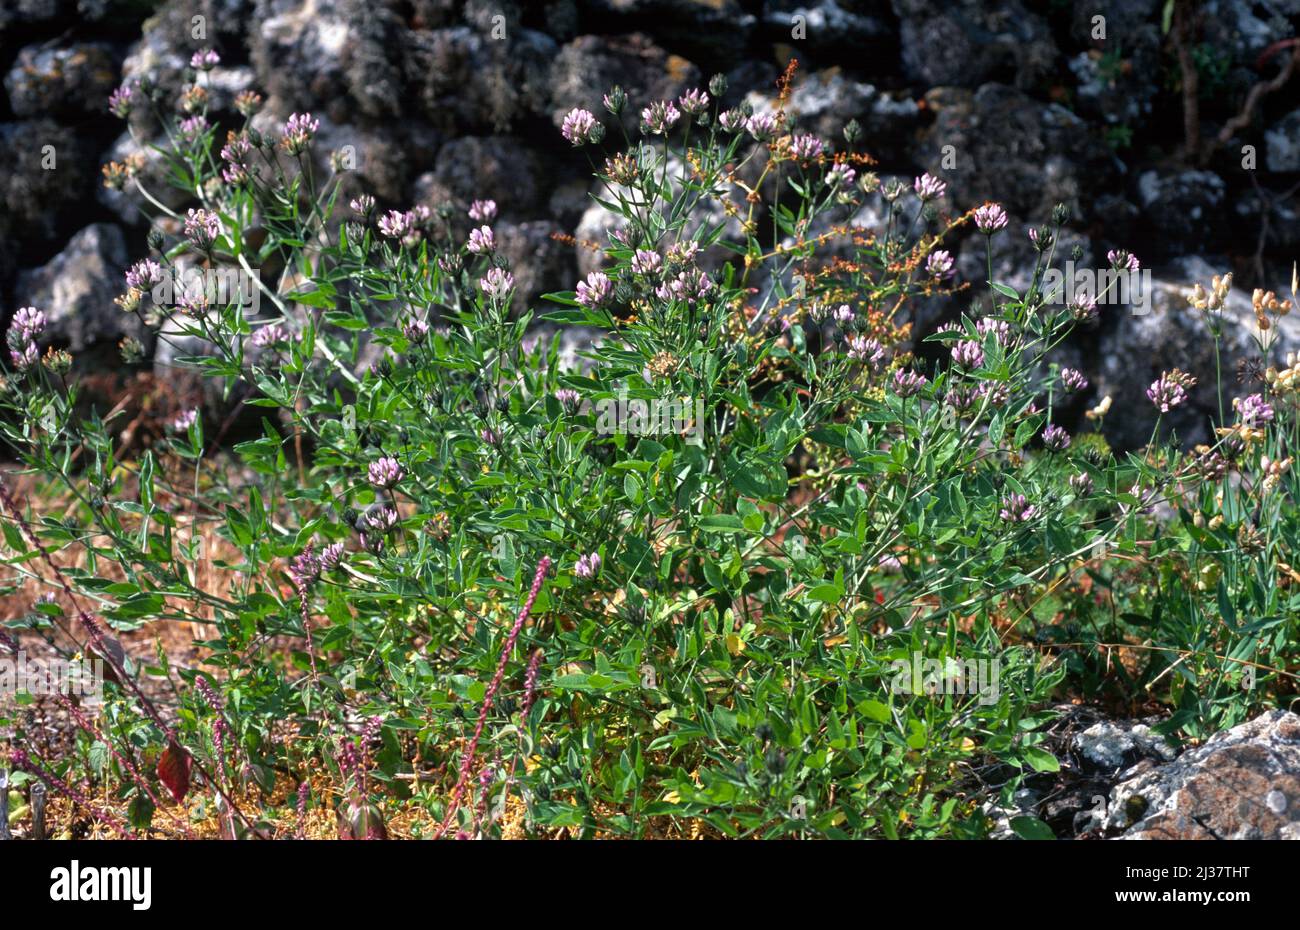 El arábigo o trébol de pitch (Bituminaria bituminosa o Psoralea bituminosa) es una hierba perenne nativa de la cuenca mediterránea y de las Islas Canarias. Foto de stock